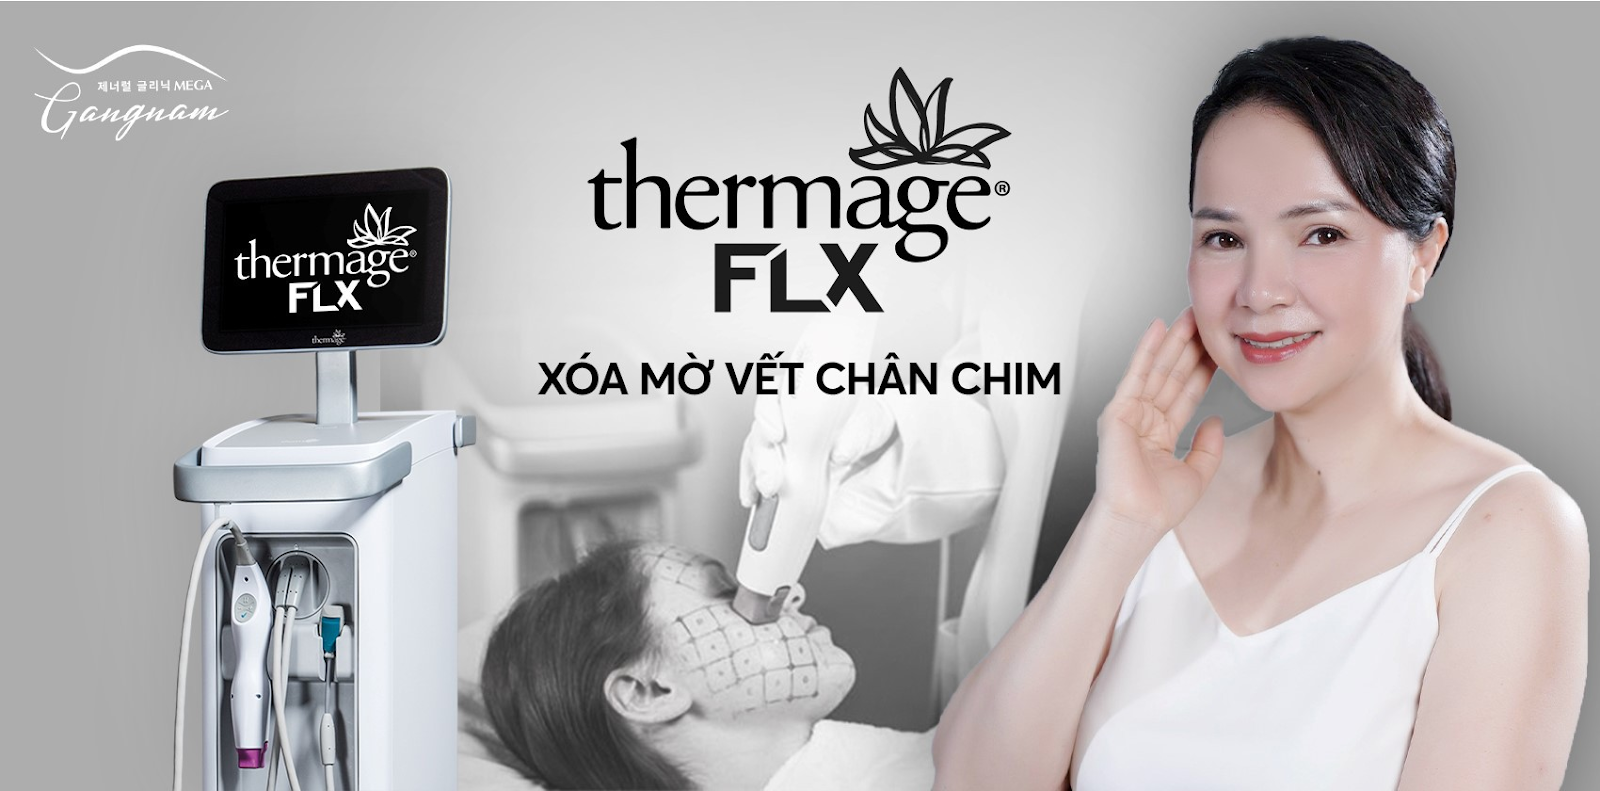 Thermage FLX giúp nàng lấy lại tuổi xuân cho đôi mắt